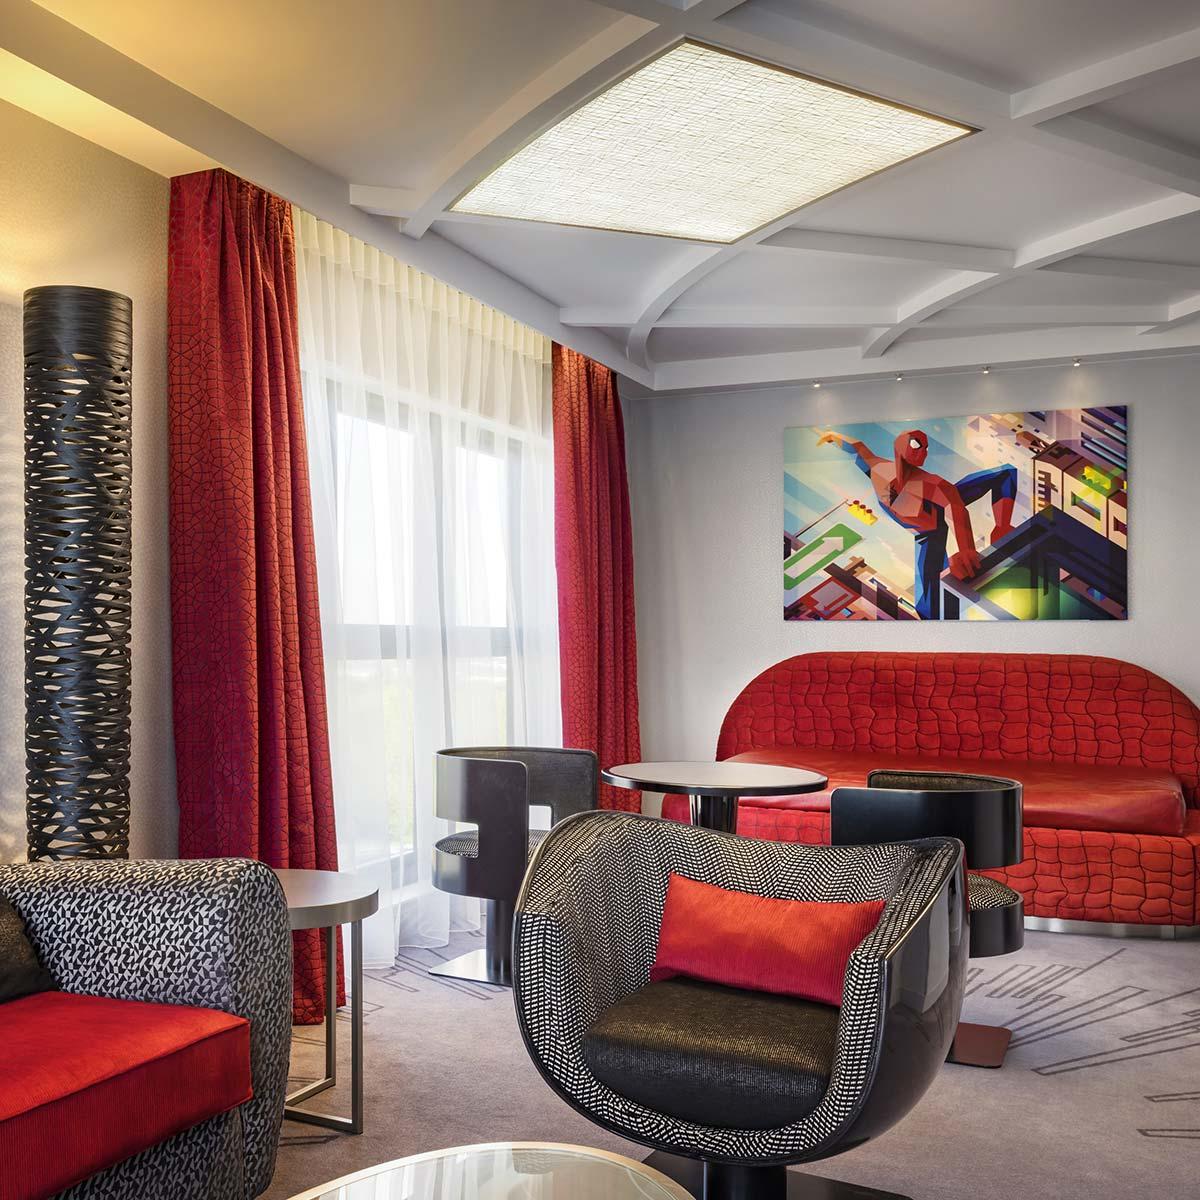 Club-Zimmer, Suiten und eine lounge im Tony Stark Stil